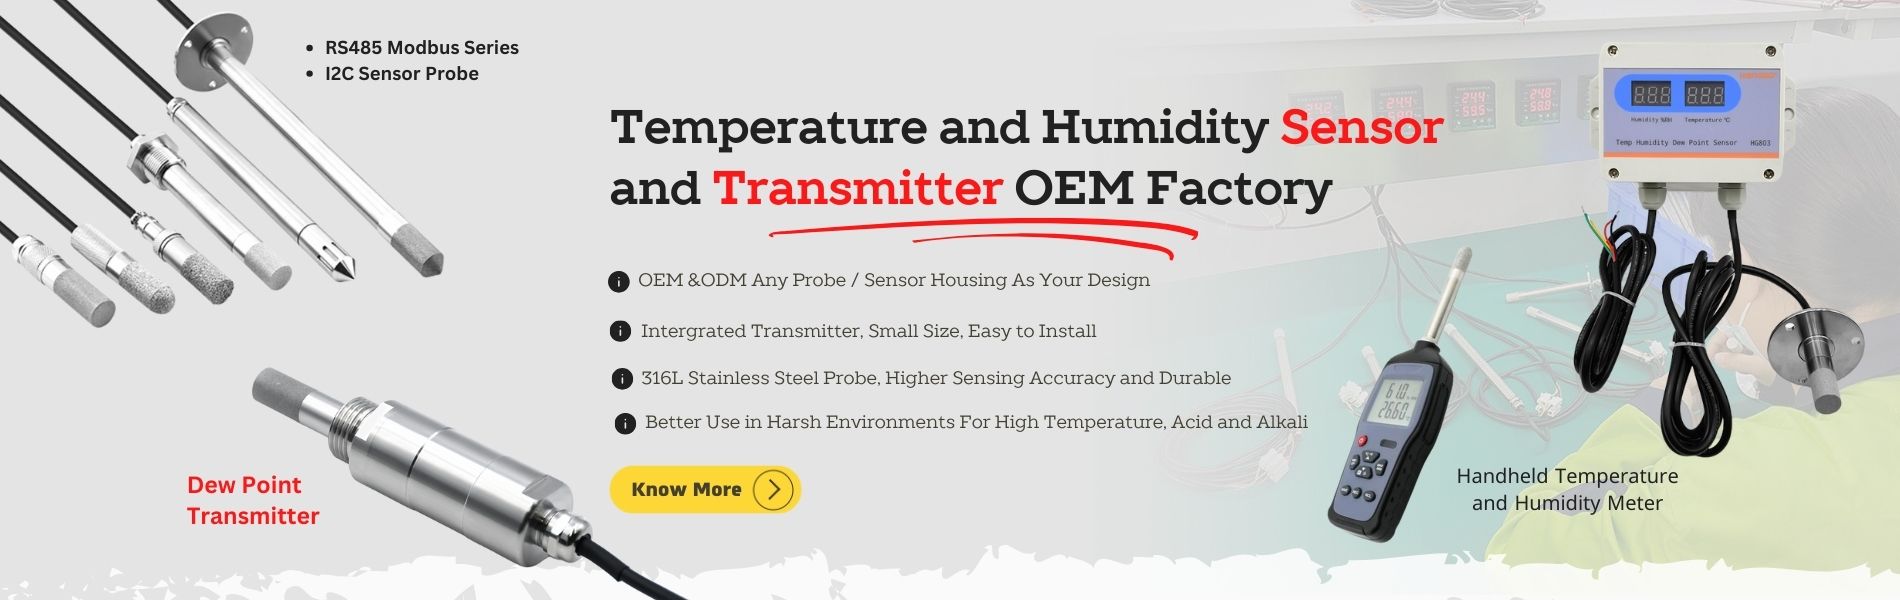 Sondă și transmițător pentru senzori de temperatură, umiditate, fabrica OEM